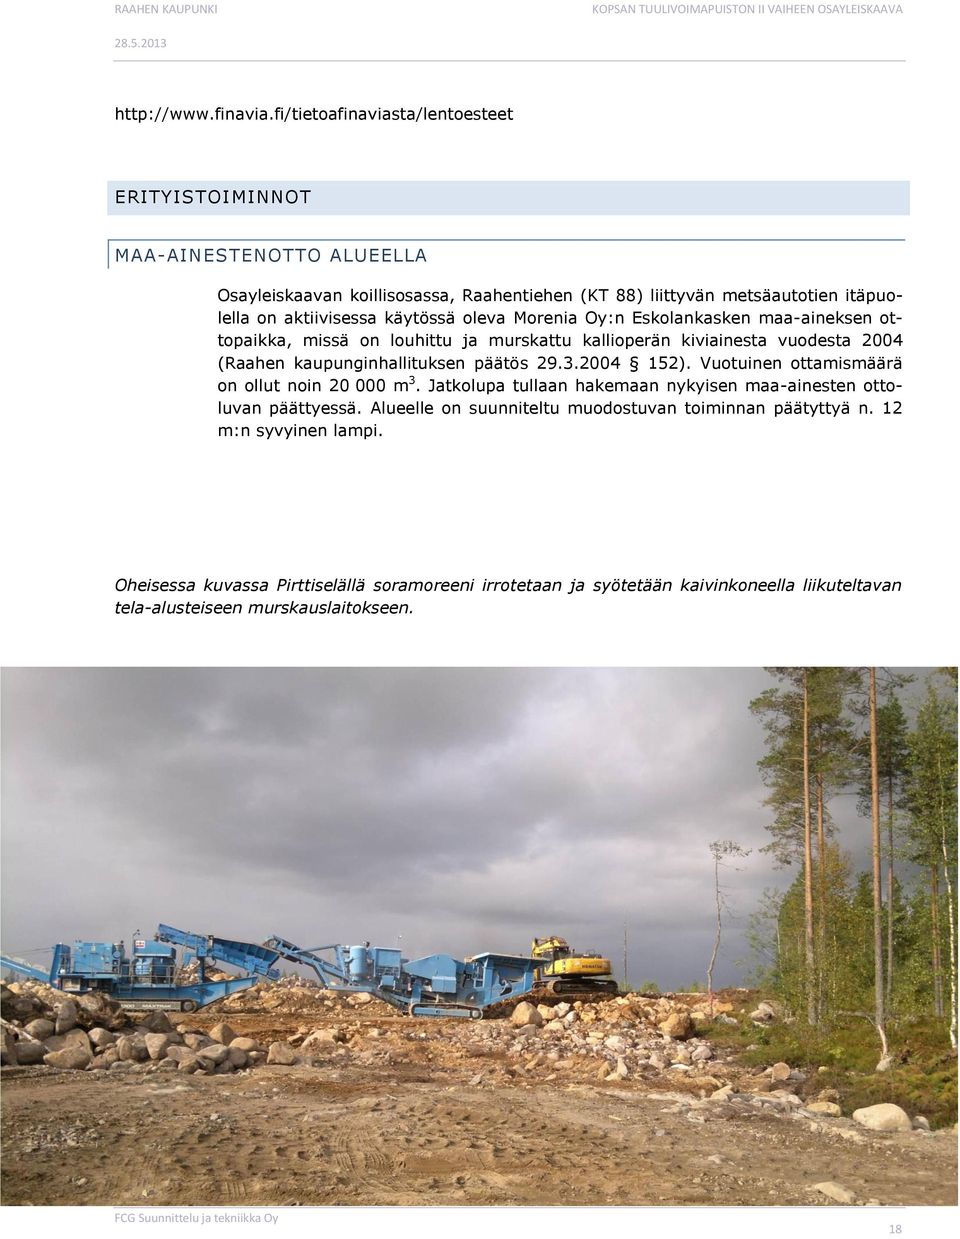 käytössä oleva Morenia Oy:n Eskolankasken maa-aineksen ottopaikka, missä on louhittu ja murskattu kallioperän kiviainesta vuodesta 2004 (Raahen kaupunginhallituksen päätös 29.3.